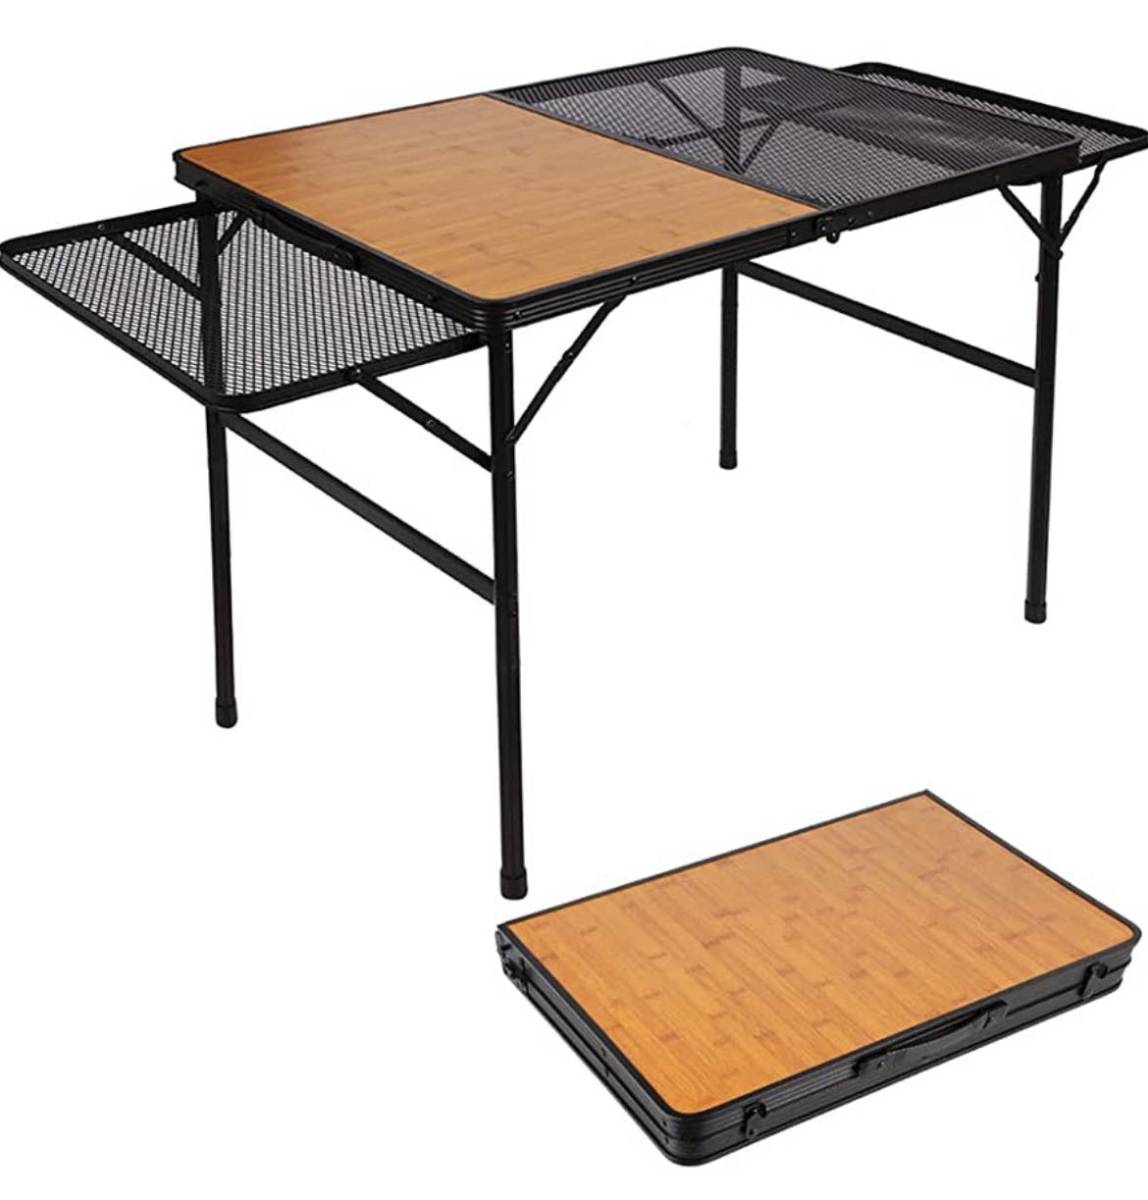 キャンプ テーブル メッシュ サイドテーブル付き 2-4人用 アウトドア テーブル 木製 軽量 高さ2段階調整可能 折りたたみテーブル コンパク